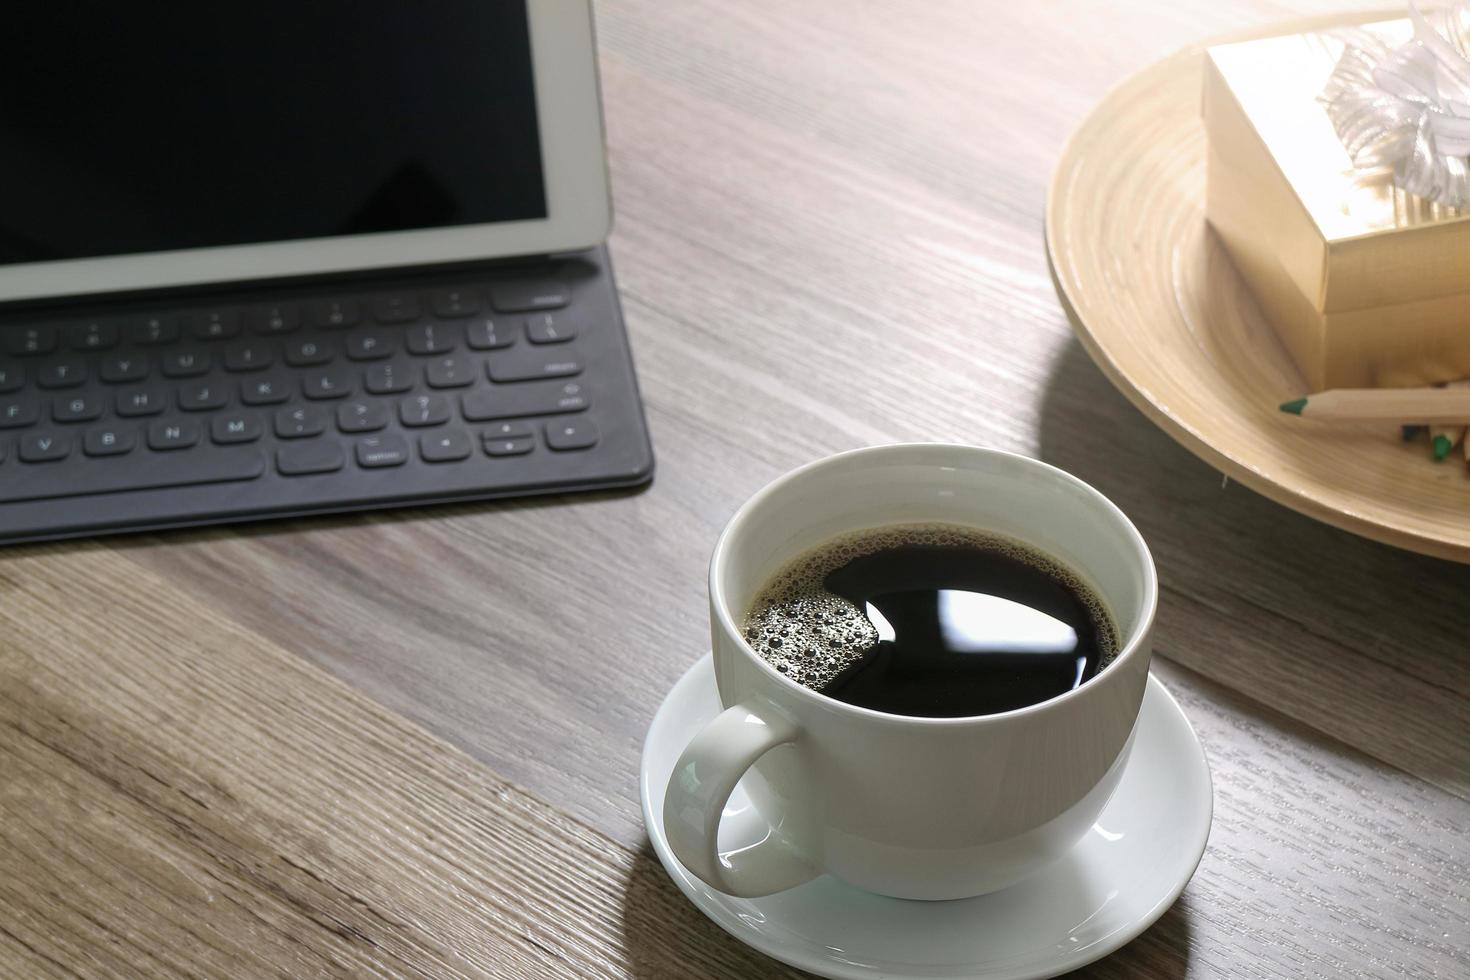 tazza da caffè e tastiera digitale docking station per tavolo, scatola regalo dorata e vassoio rotondo in legno, matita colorata su tavolo in legno, effetto filtro foto